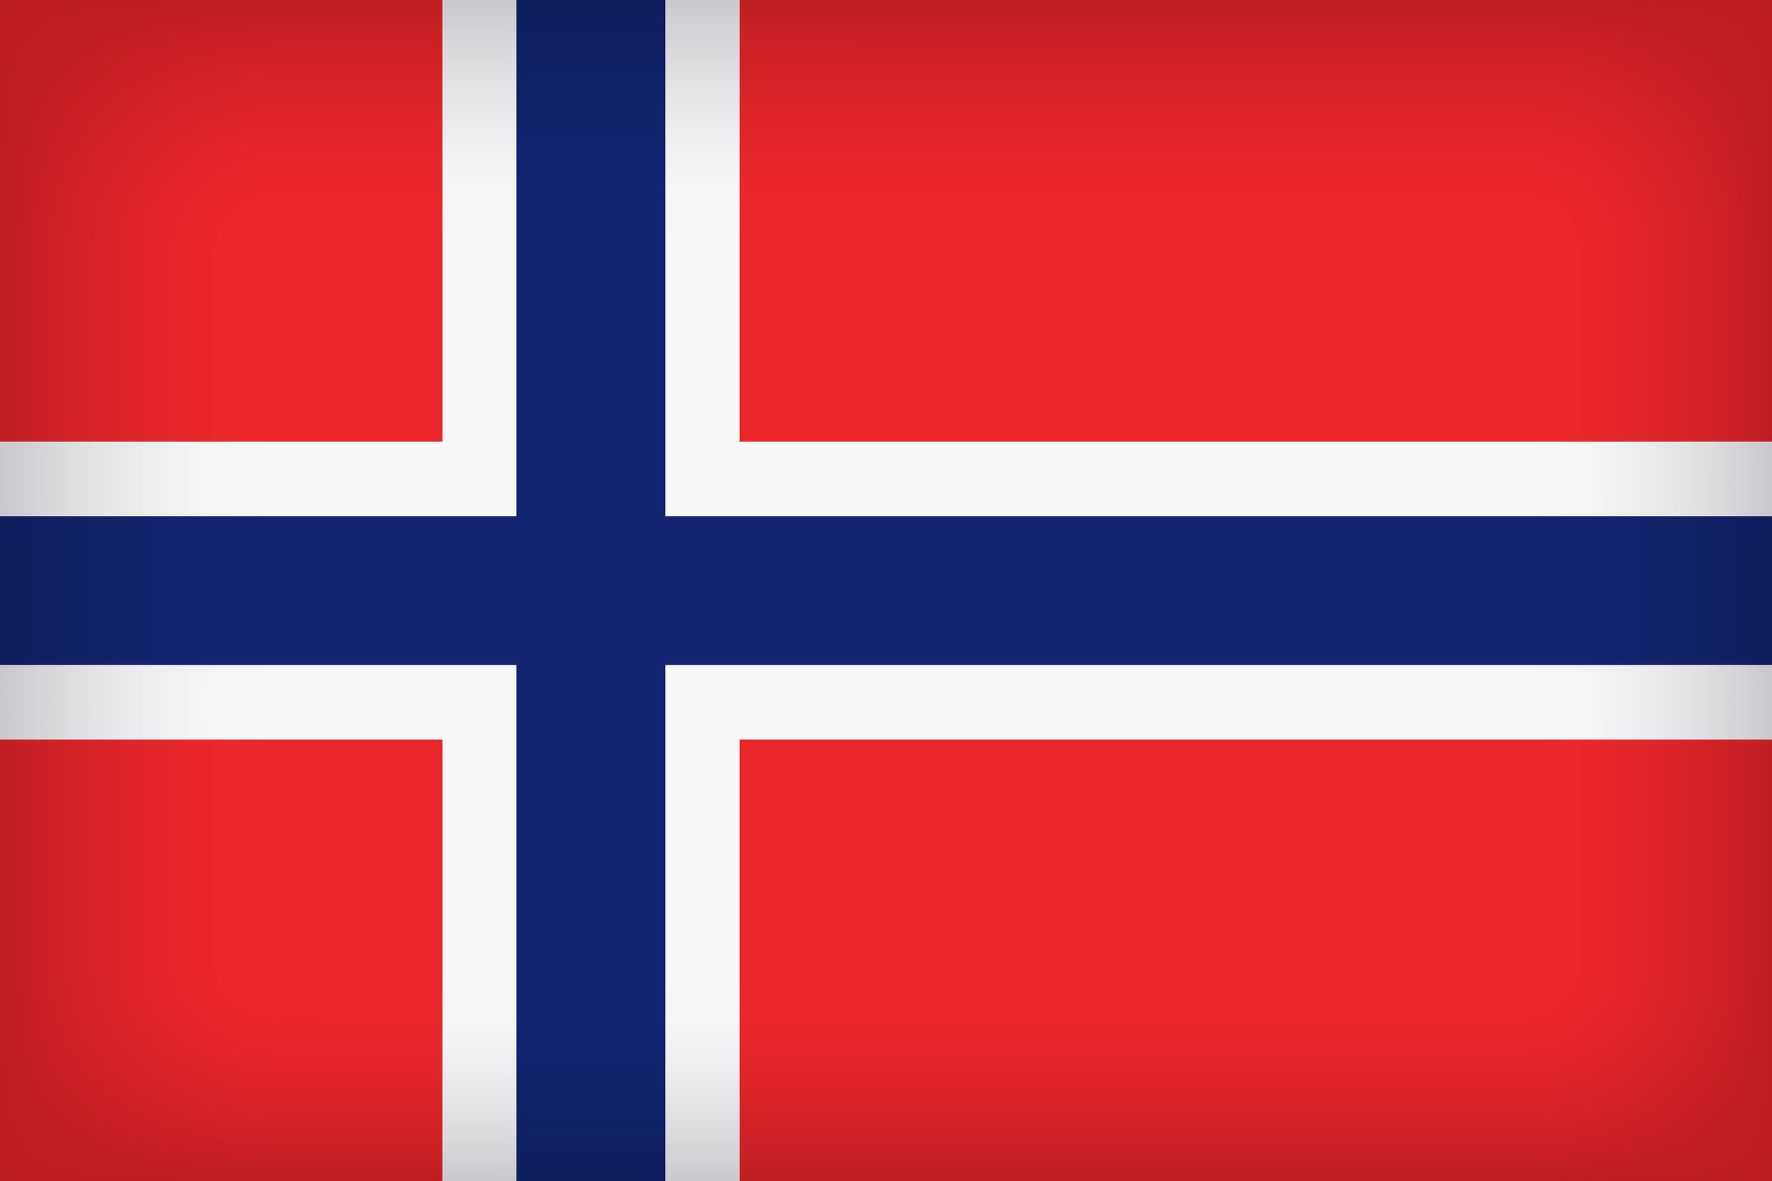 Pannello di ricerca di mercato in Norvegia